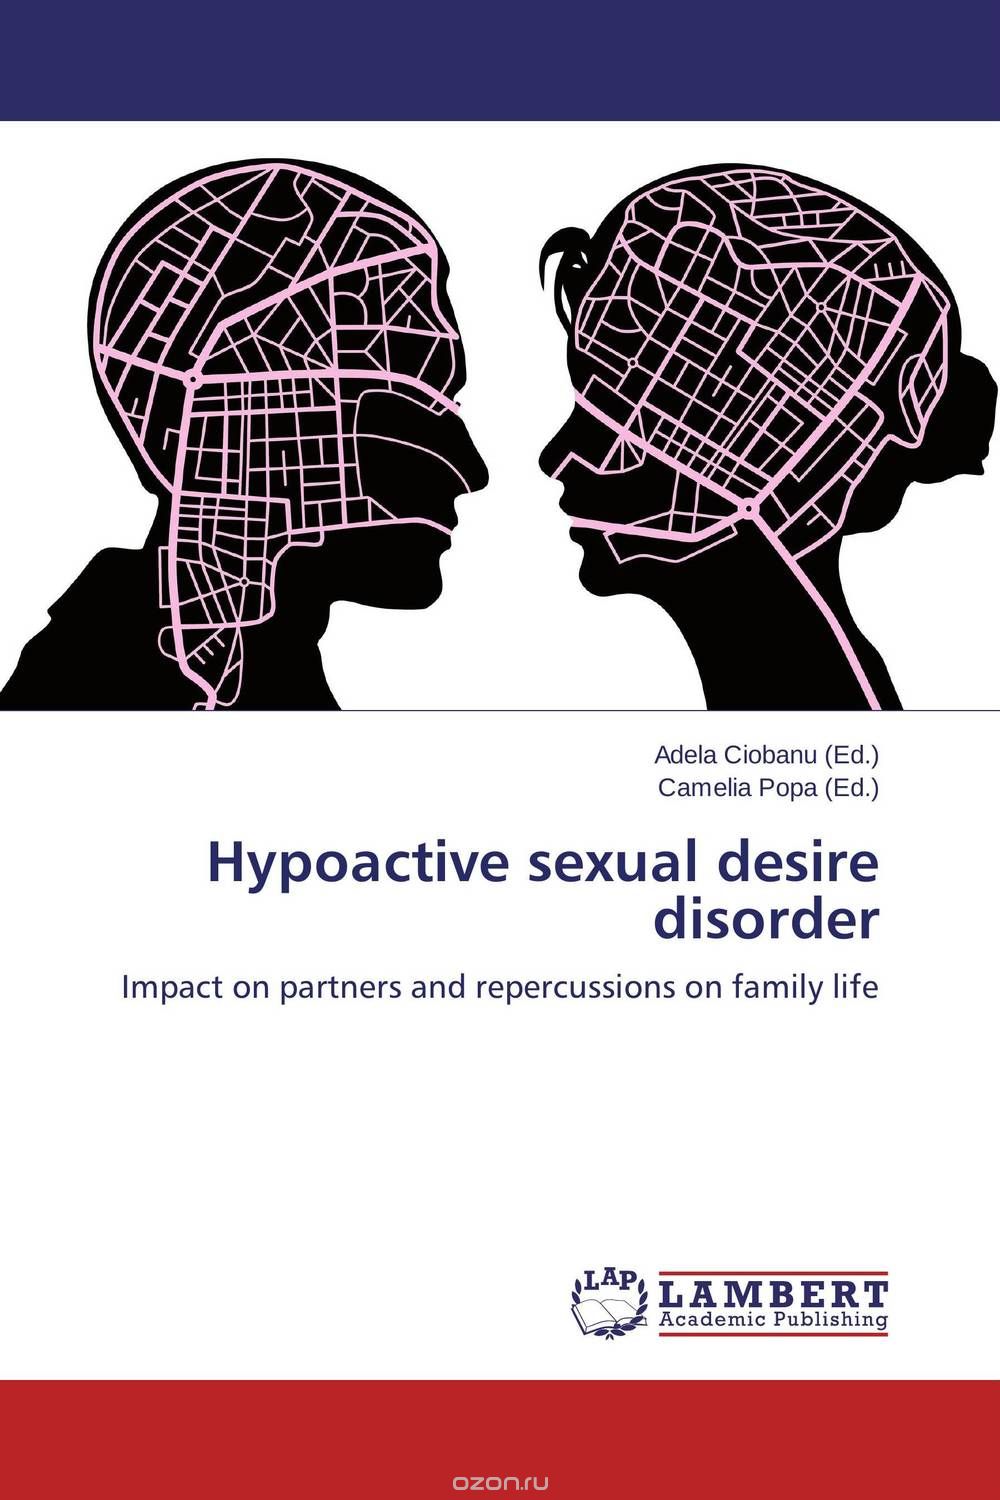 Скачать книгу "Hypoactive sexual desire disorder"